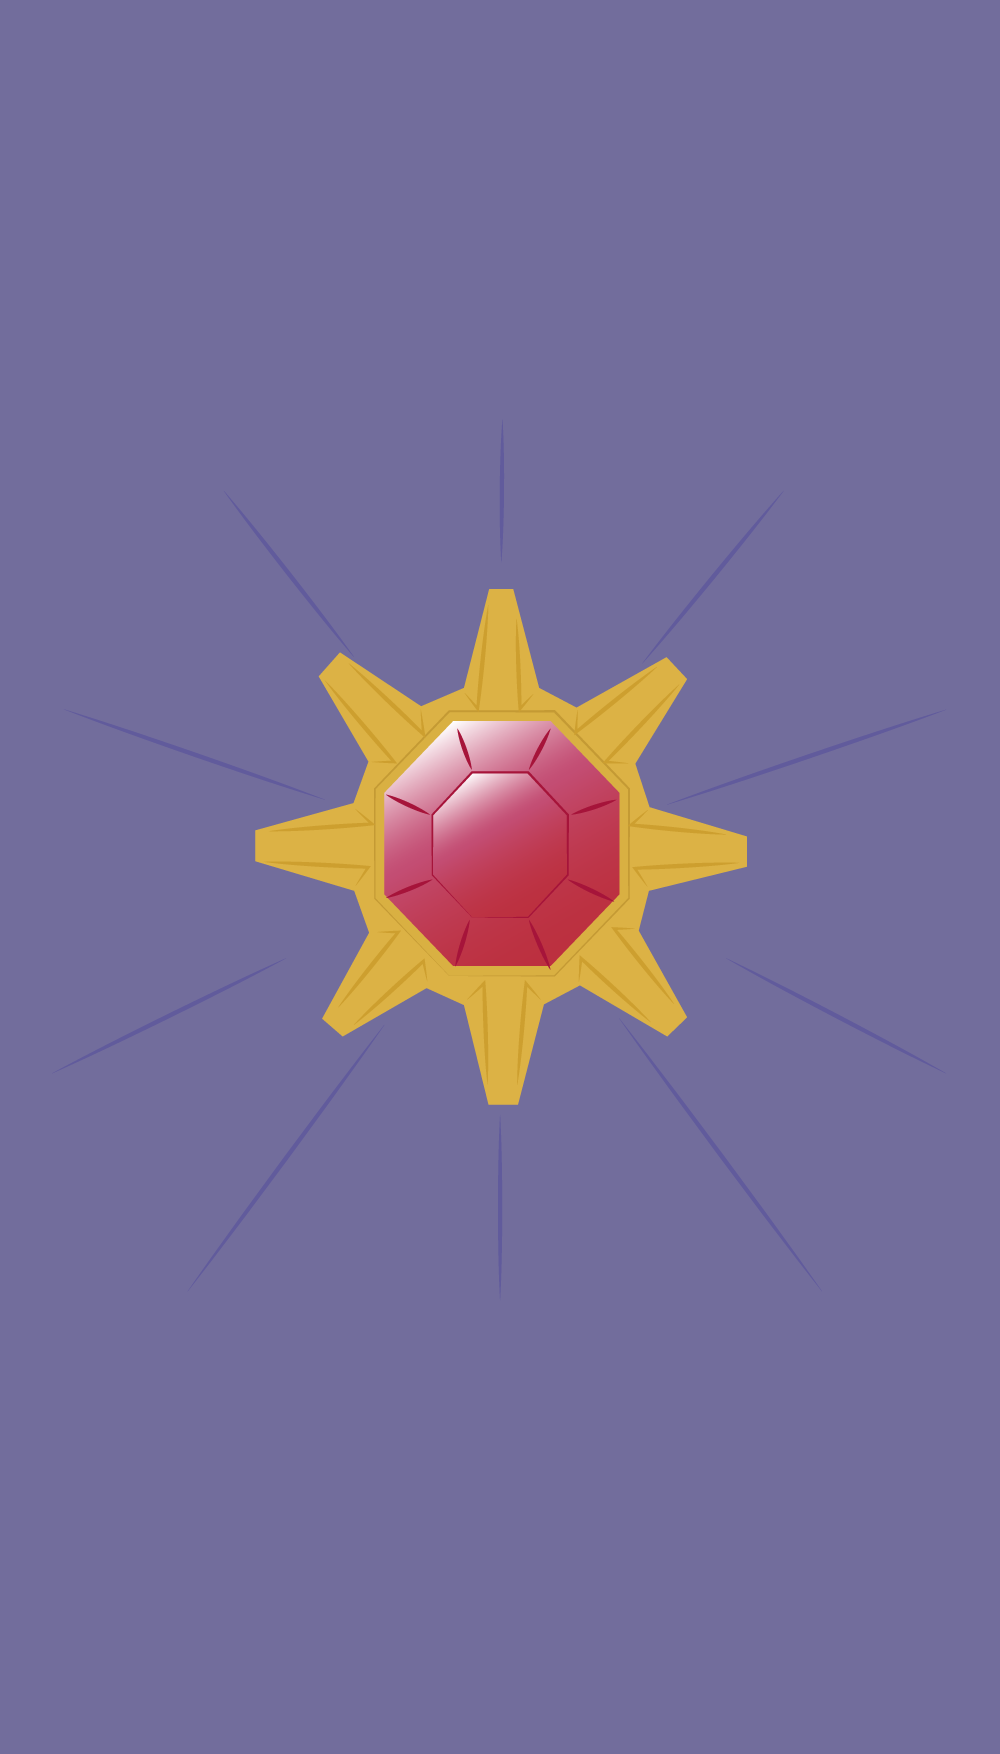 pokemon lock screen wallpaper,purple,illustration,symmetry,pattern,logo